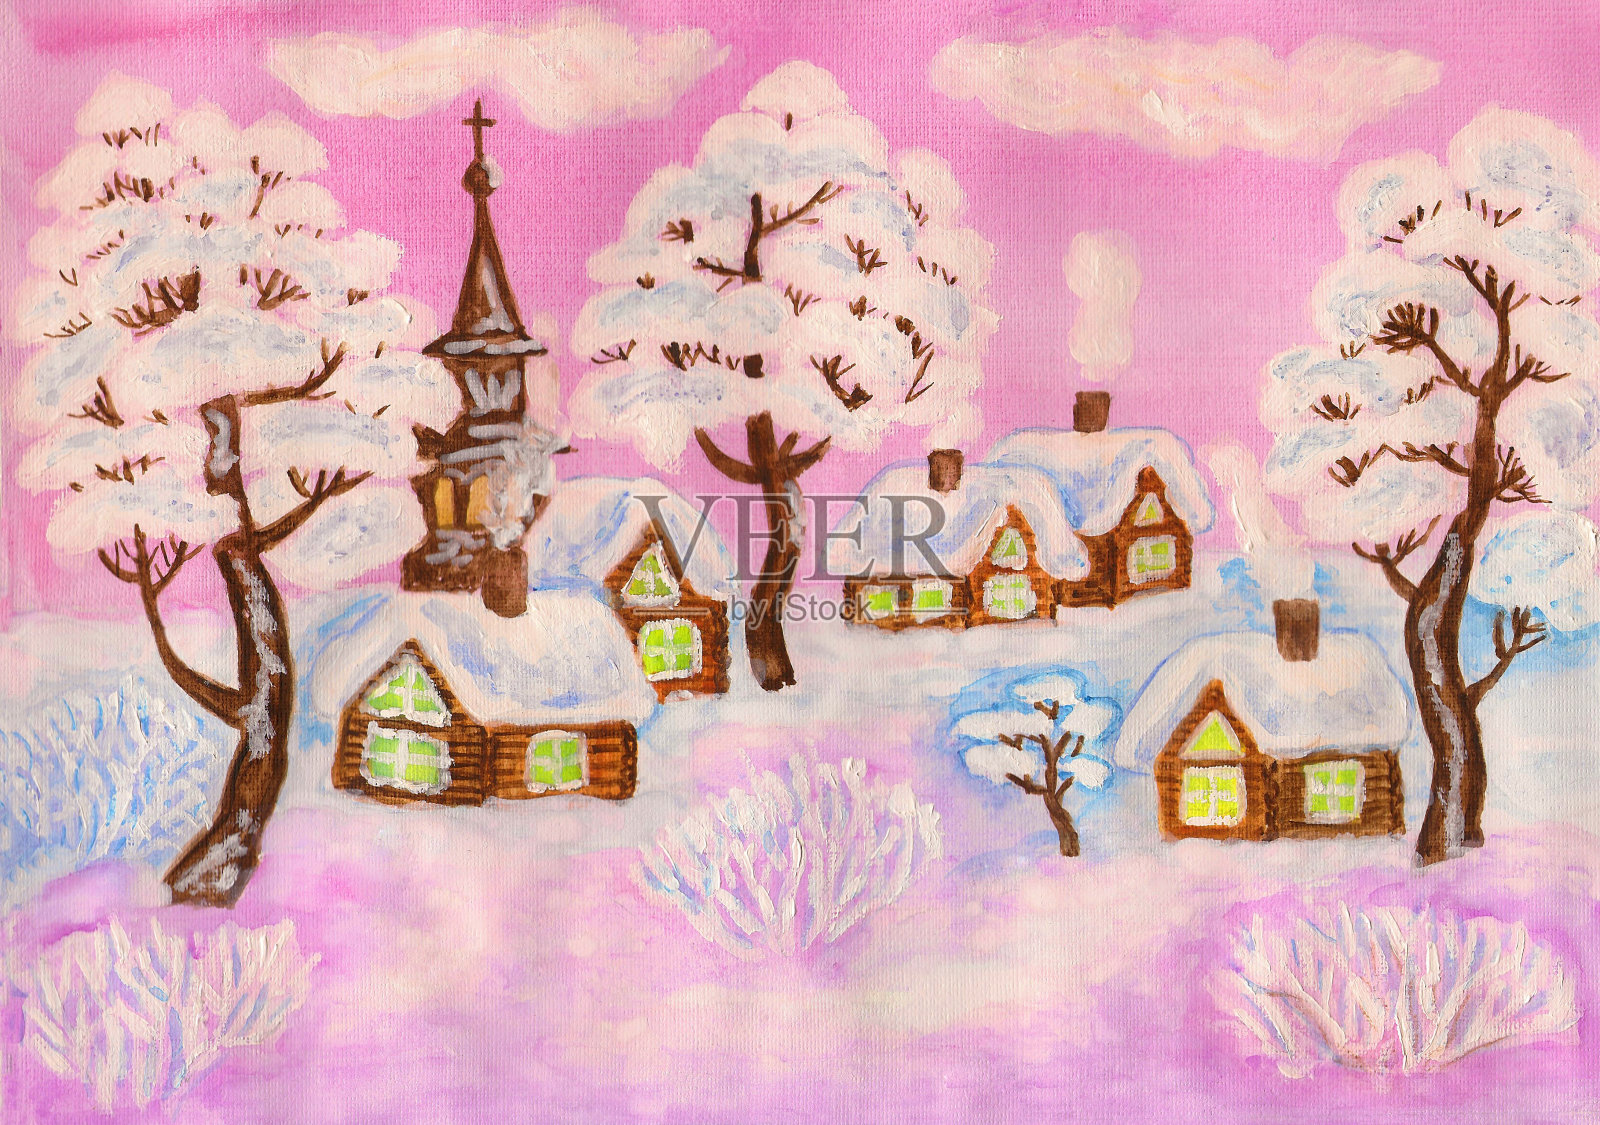 冬天的风景画上了粉红色，画上了插画图片素材